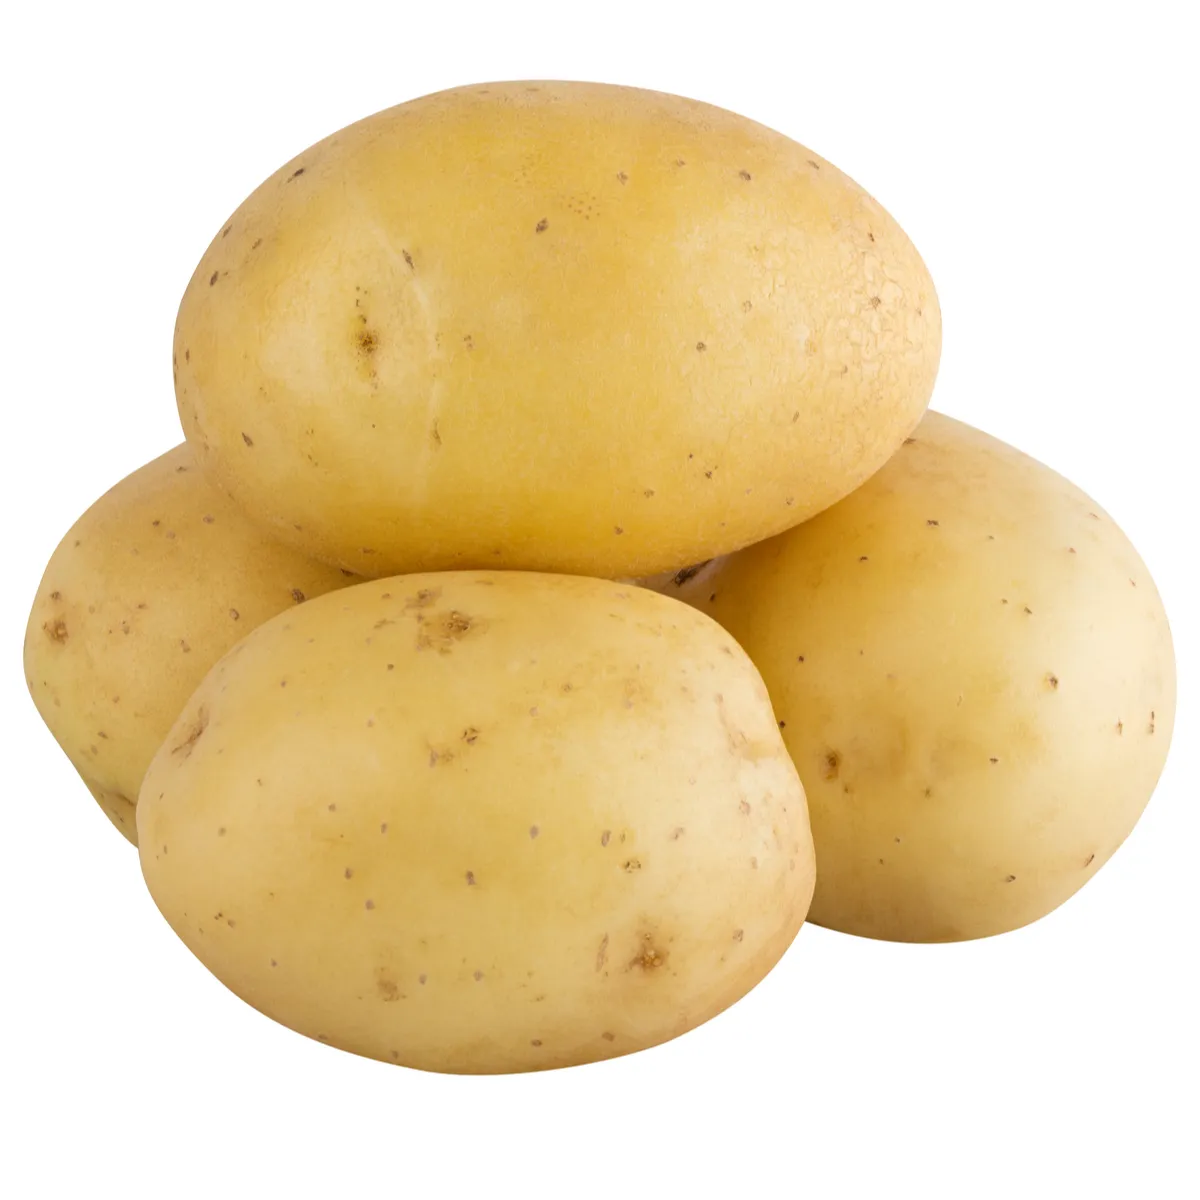 חדש קציר הולנד טרי תפוחי אדמה/תפוחי אדמה טריות למכירה